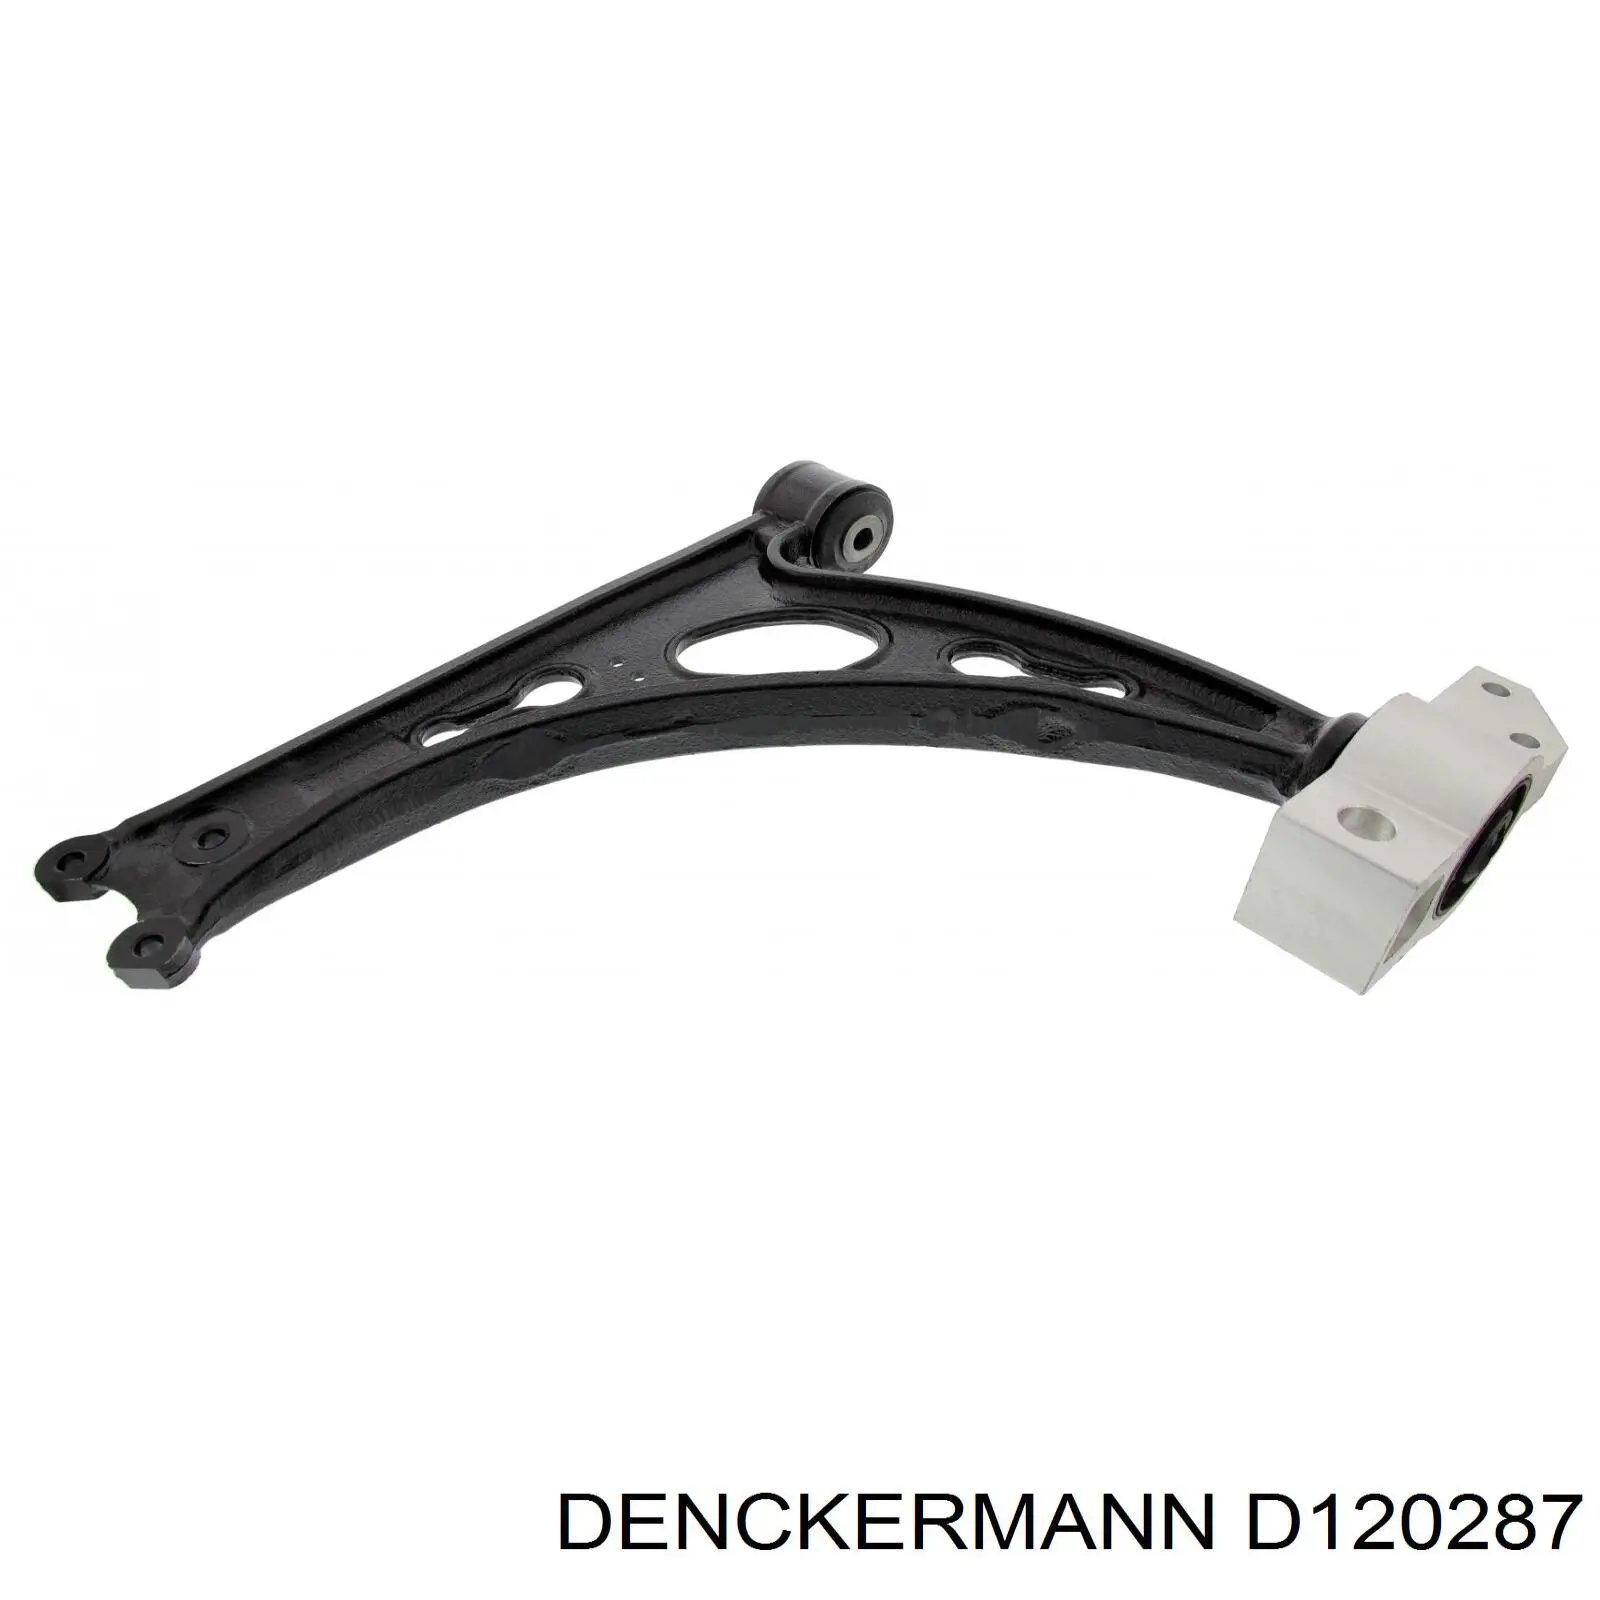 D120287 Denckermann barra oscilante, suspensión de ruedas delantera, inferior derecha